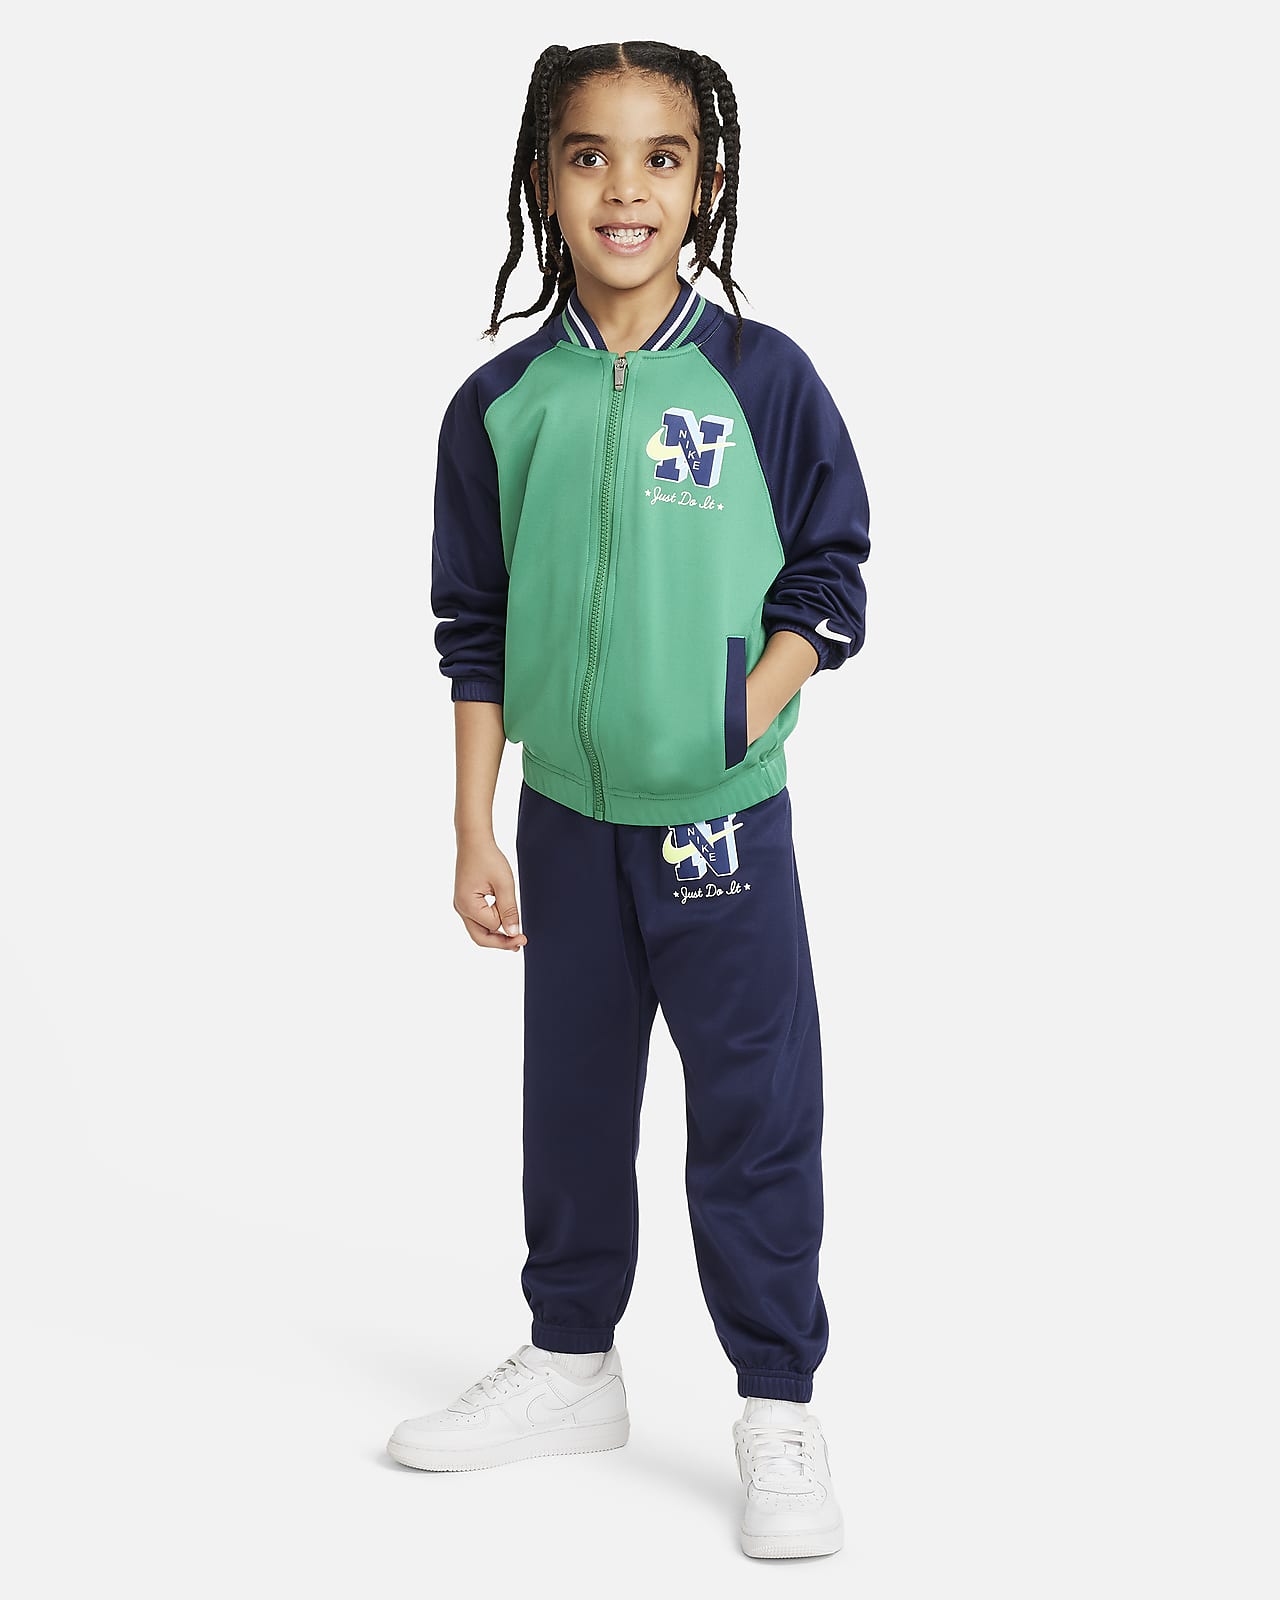 Nike Sportswear Next Gen Tricot Kids\' Set. Dri-FIT Little